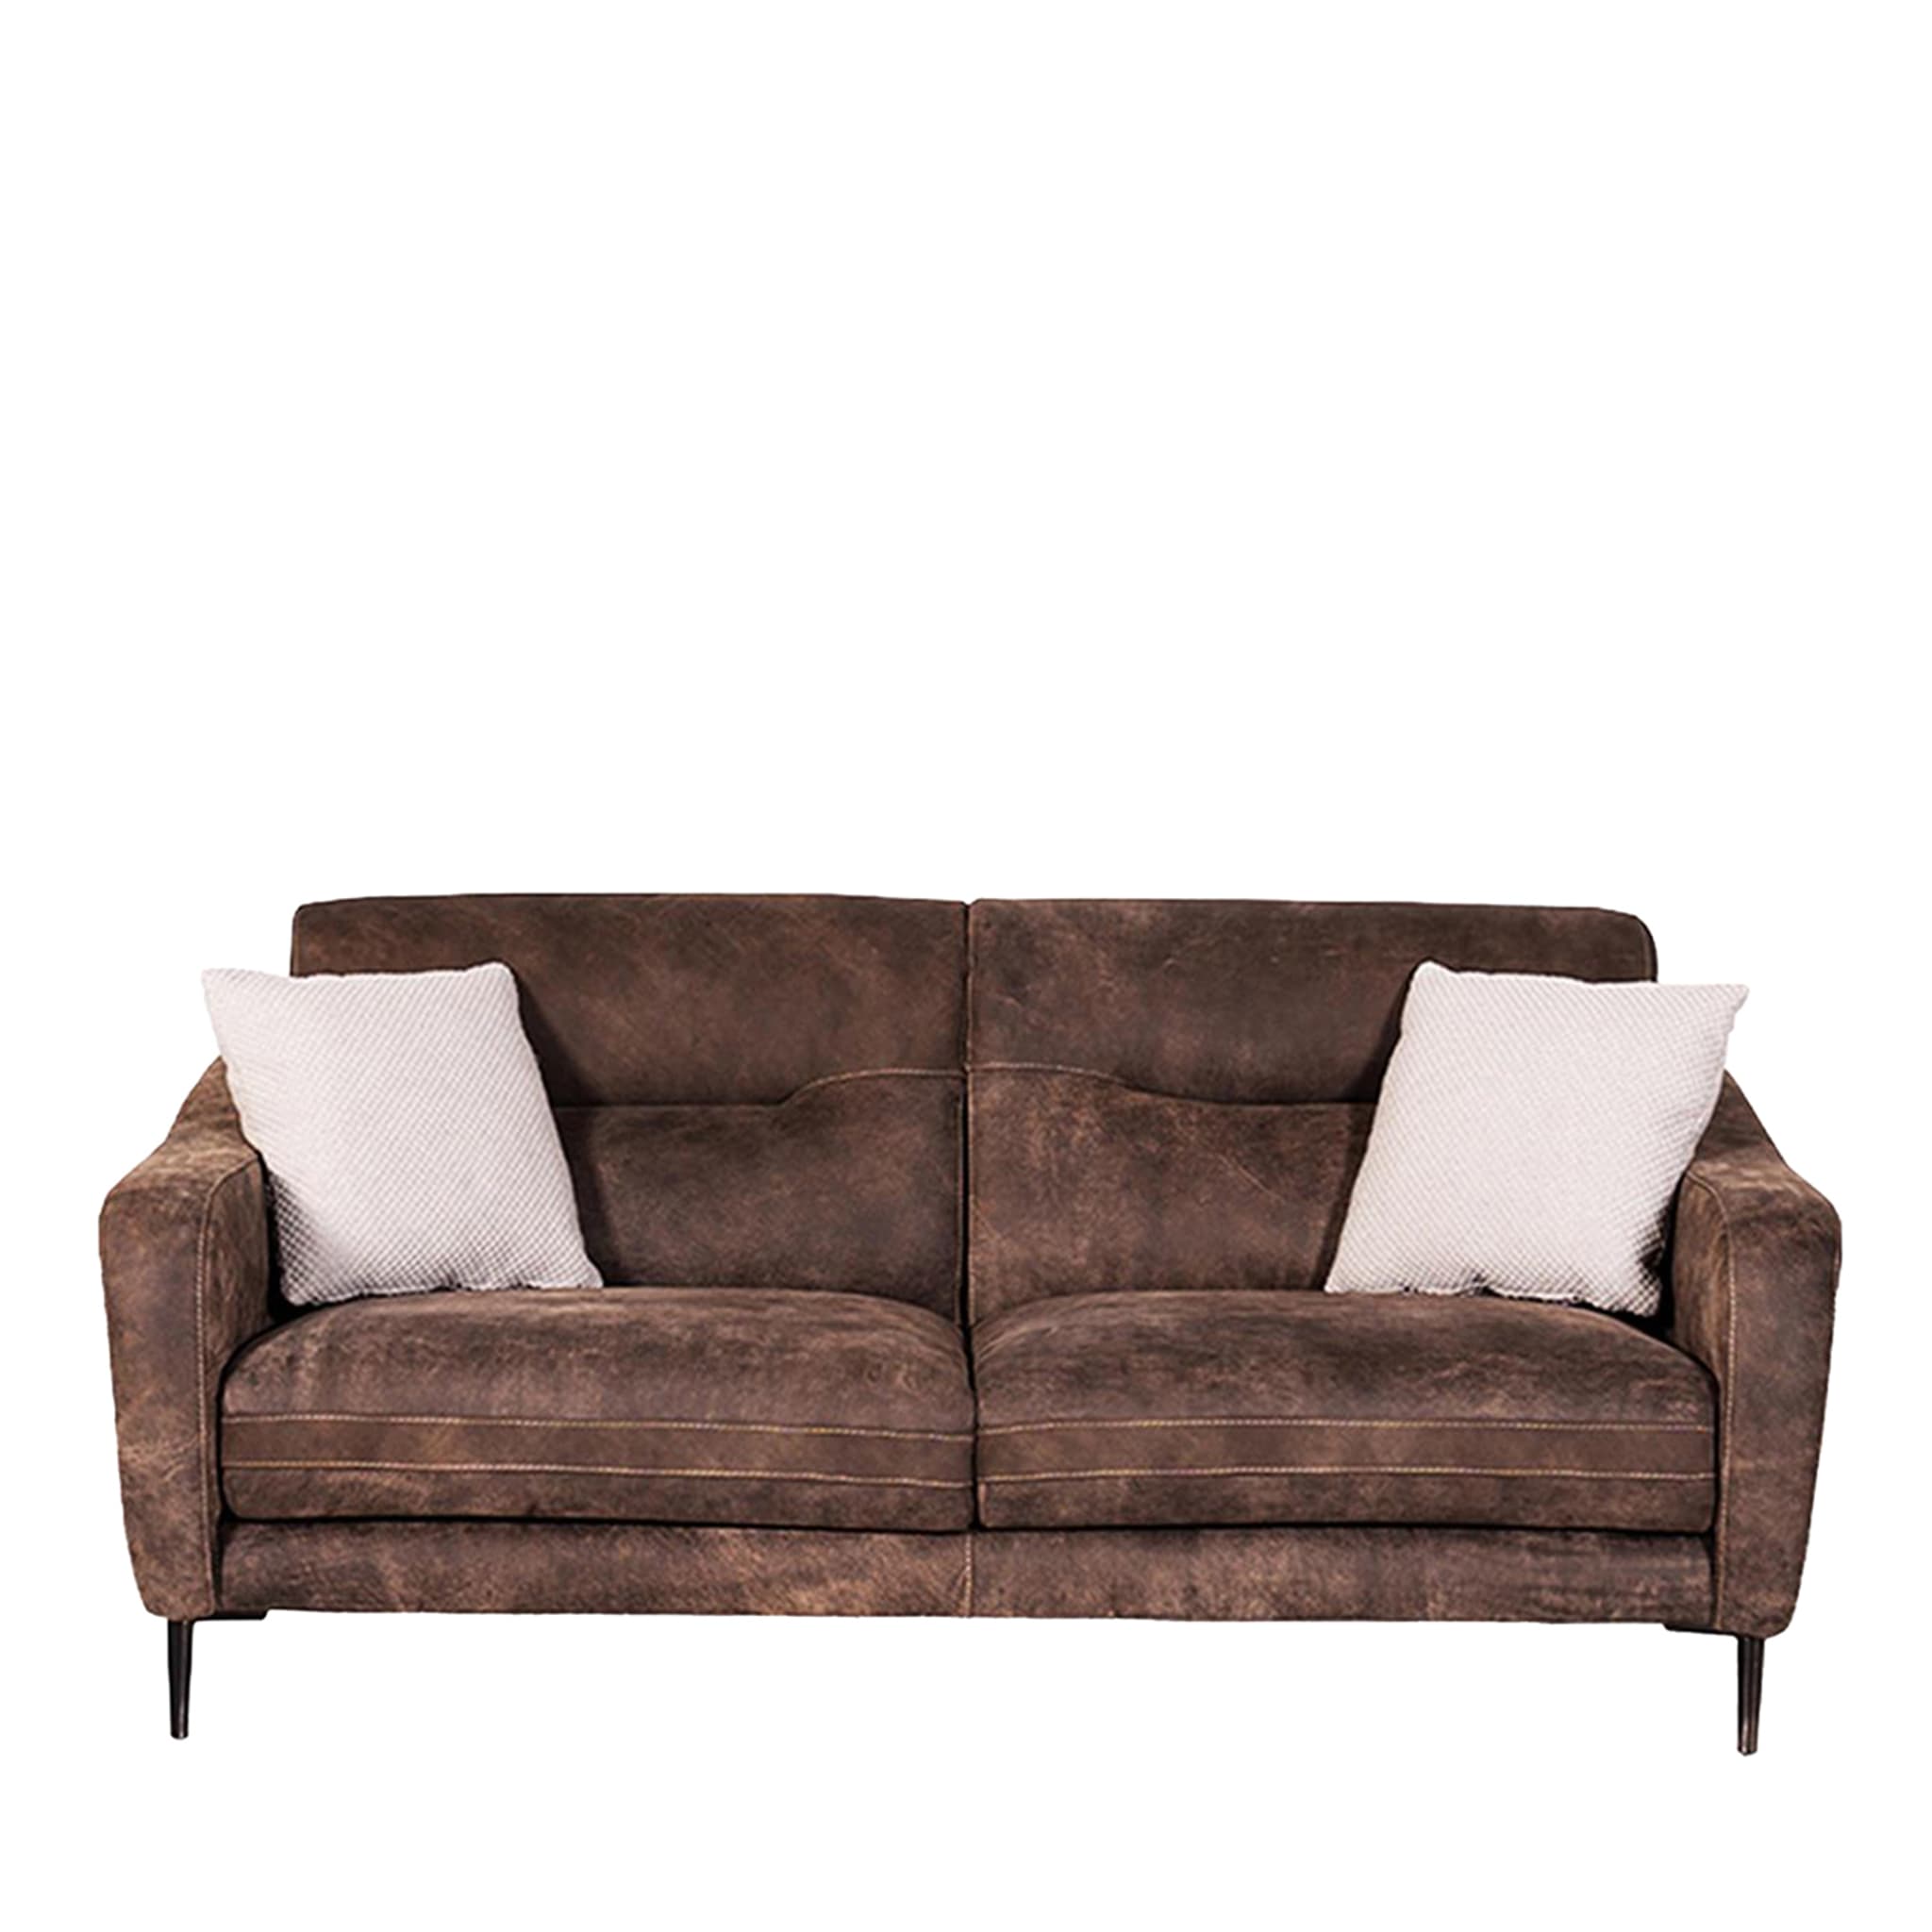 Fonzie Braunes Leder 2-Sitzer Sofa Tribeca Kollektion - Hauptansicht